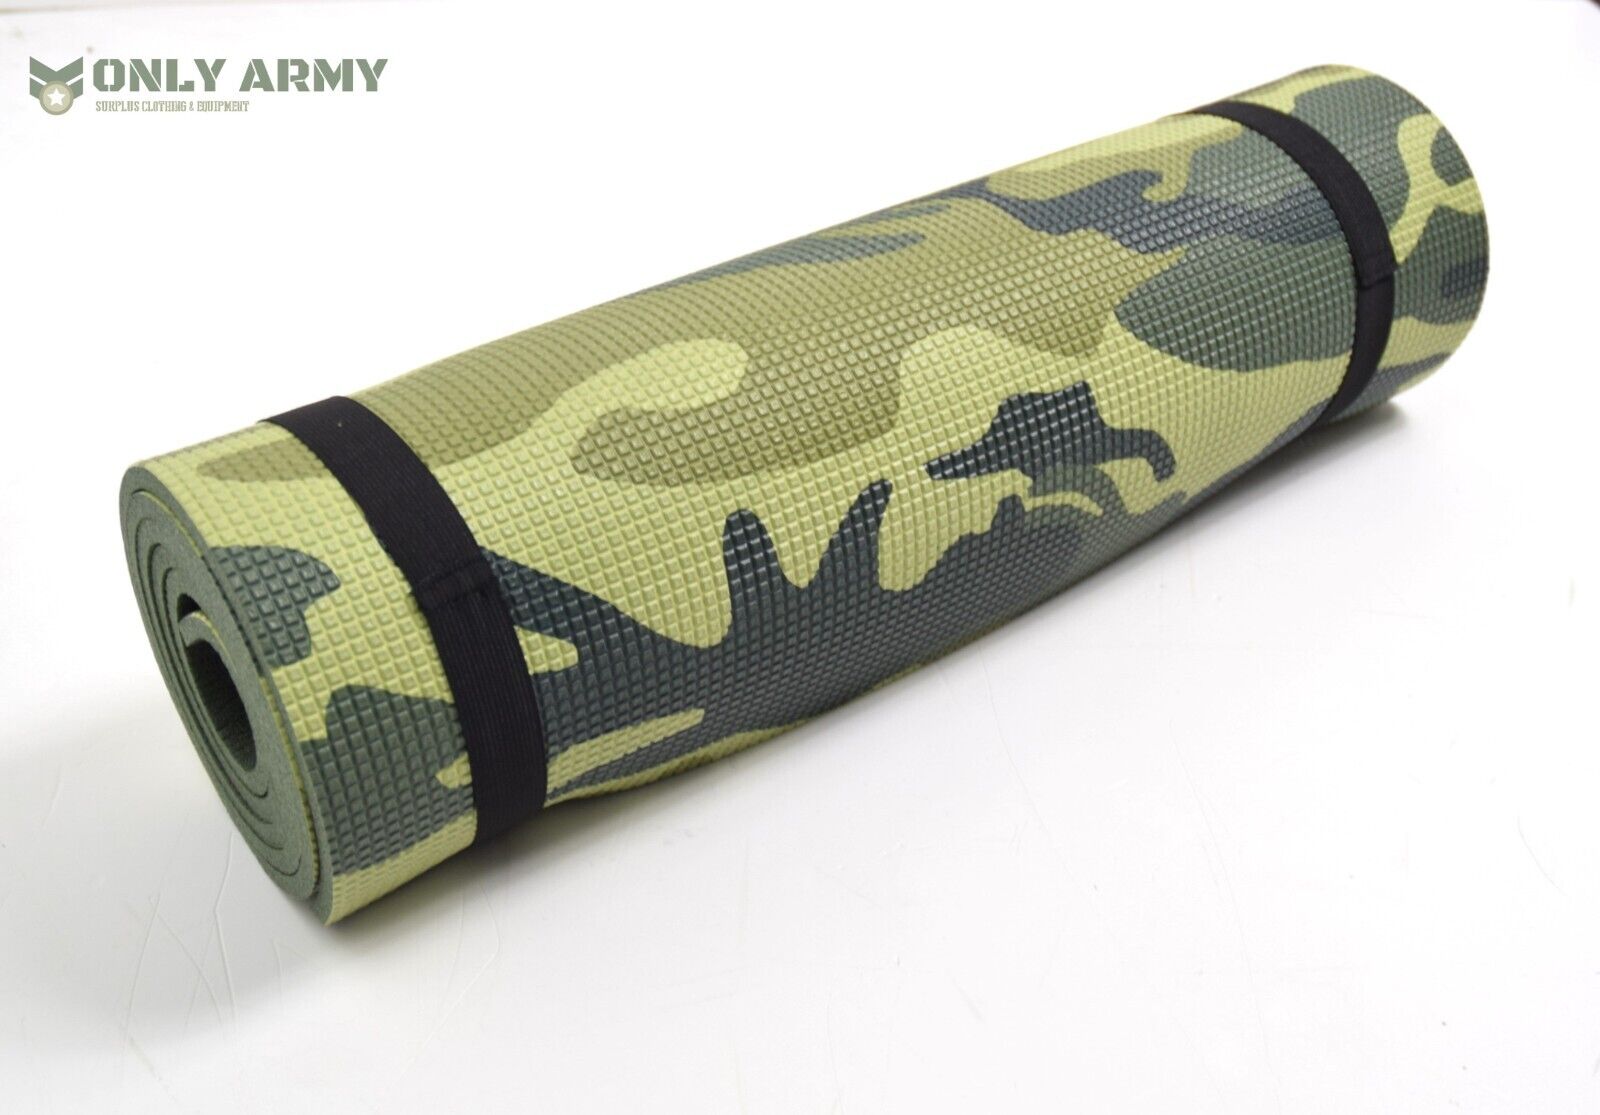 Czech Army Roll Mat M90 Issue Camo Sleeping Mat Compact Lightweight Comfortable